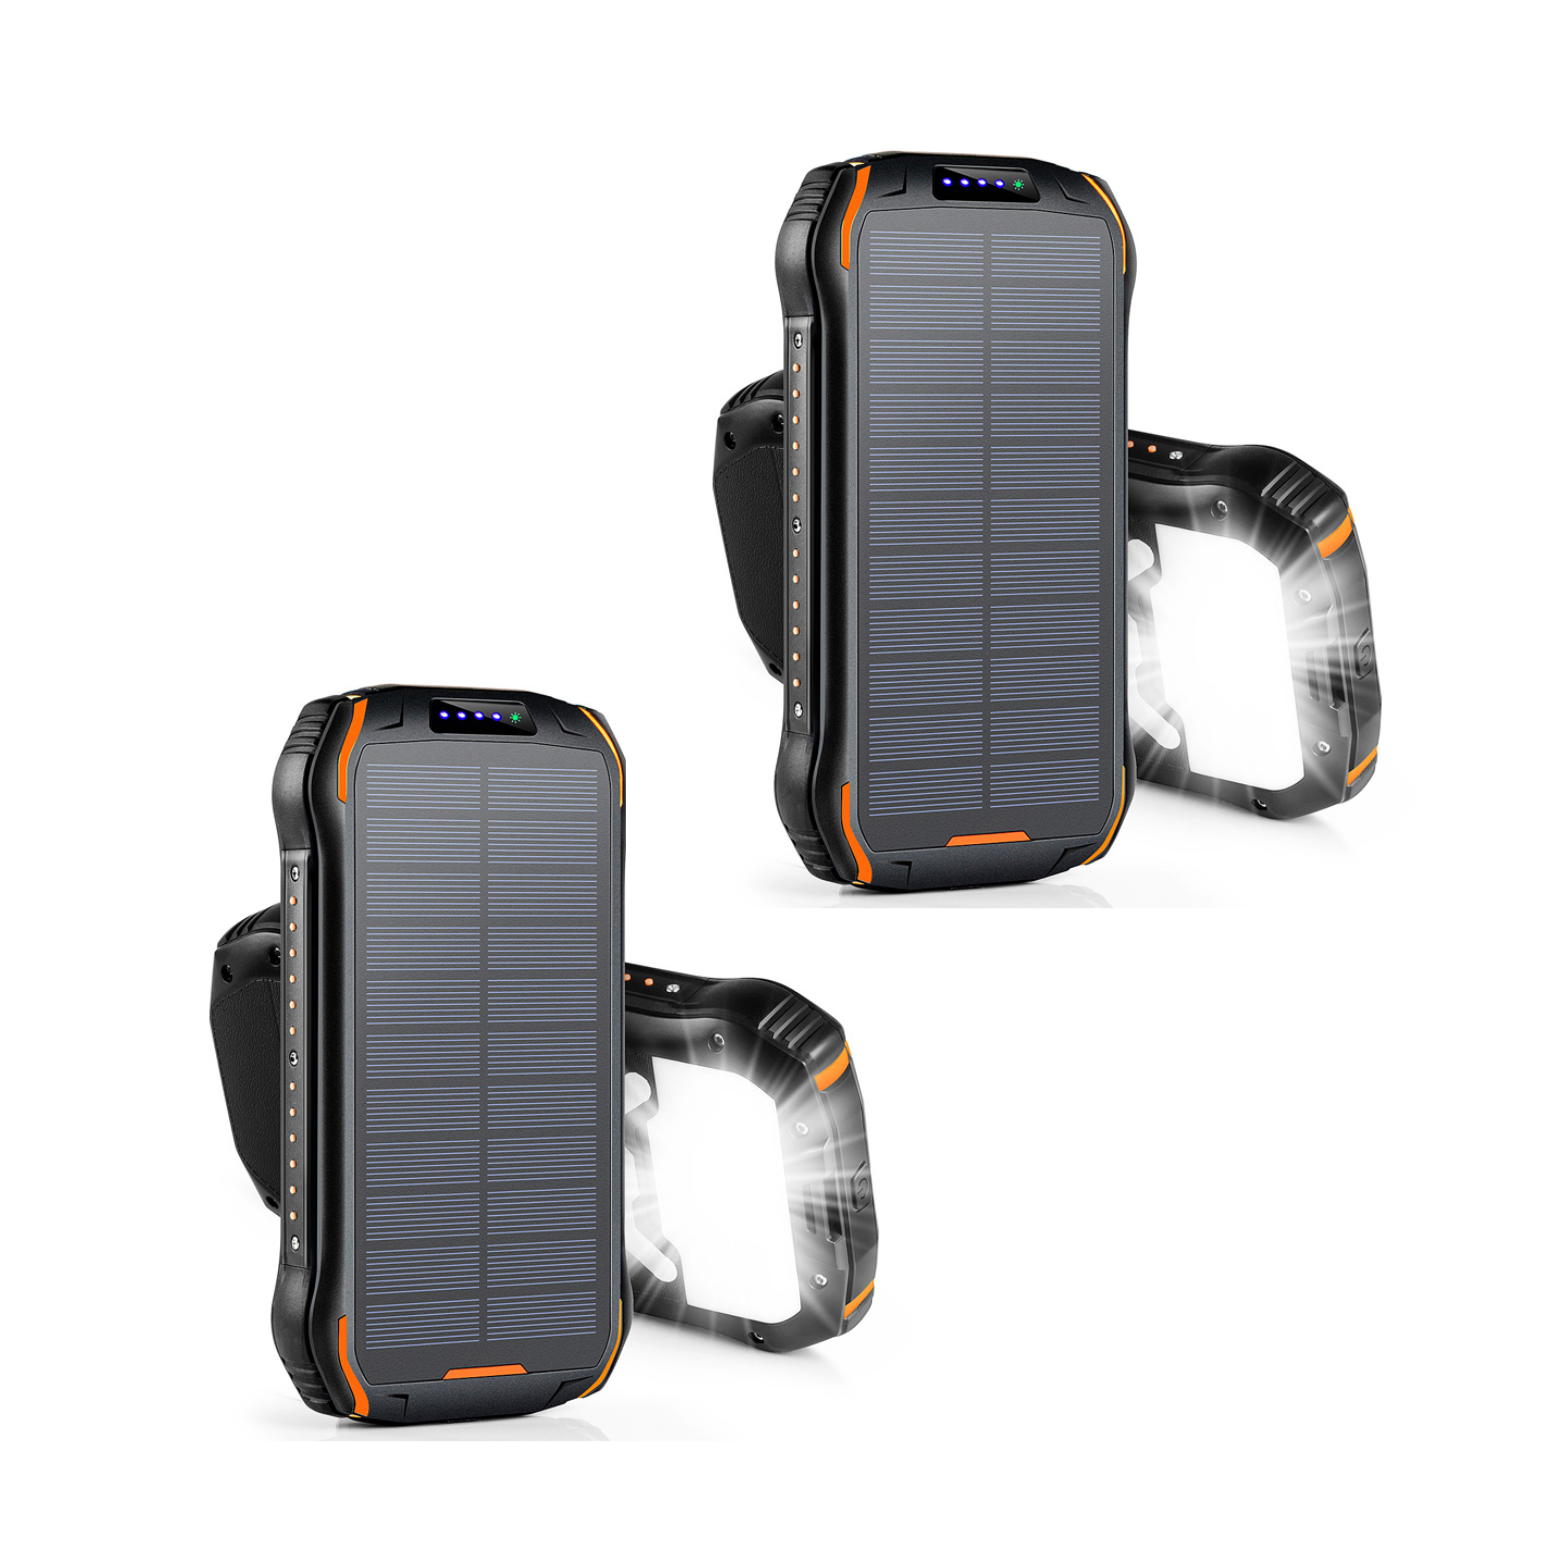 Cargador Solar Power Bank • Batería Solar Portátil • Carga Inalámbrica • Impermeable • Linterna • 26.800 mAh • Pack doble